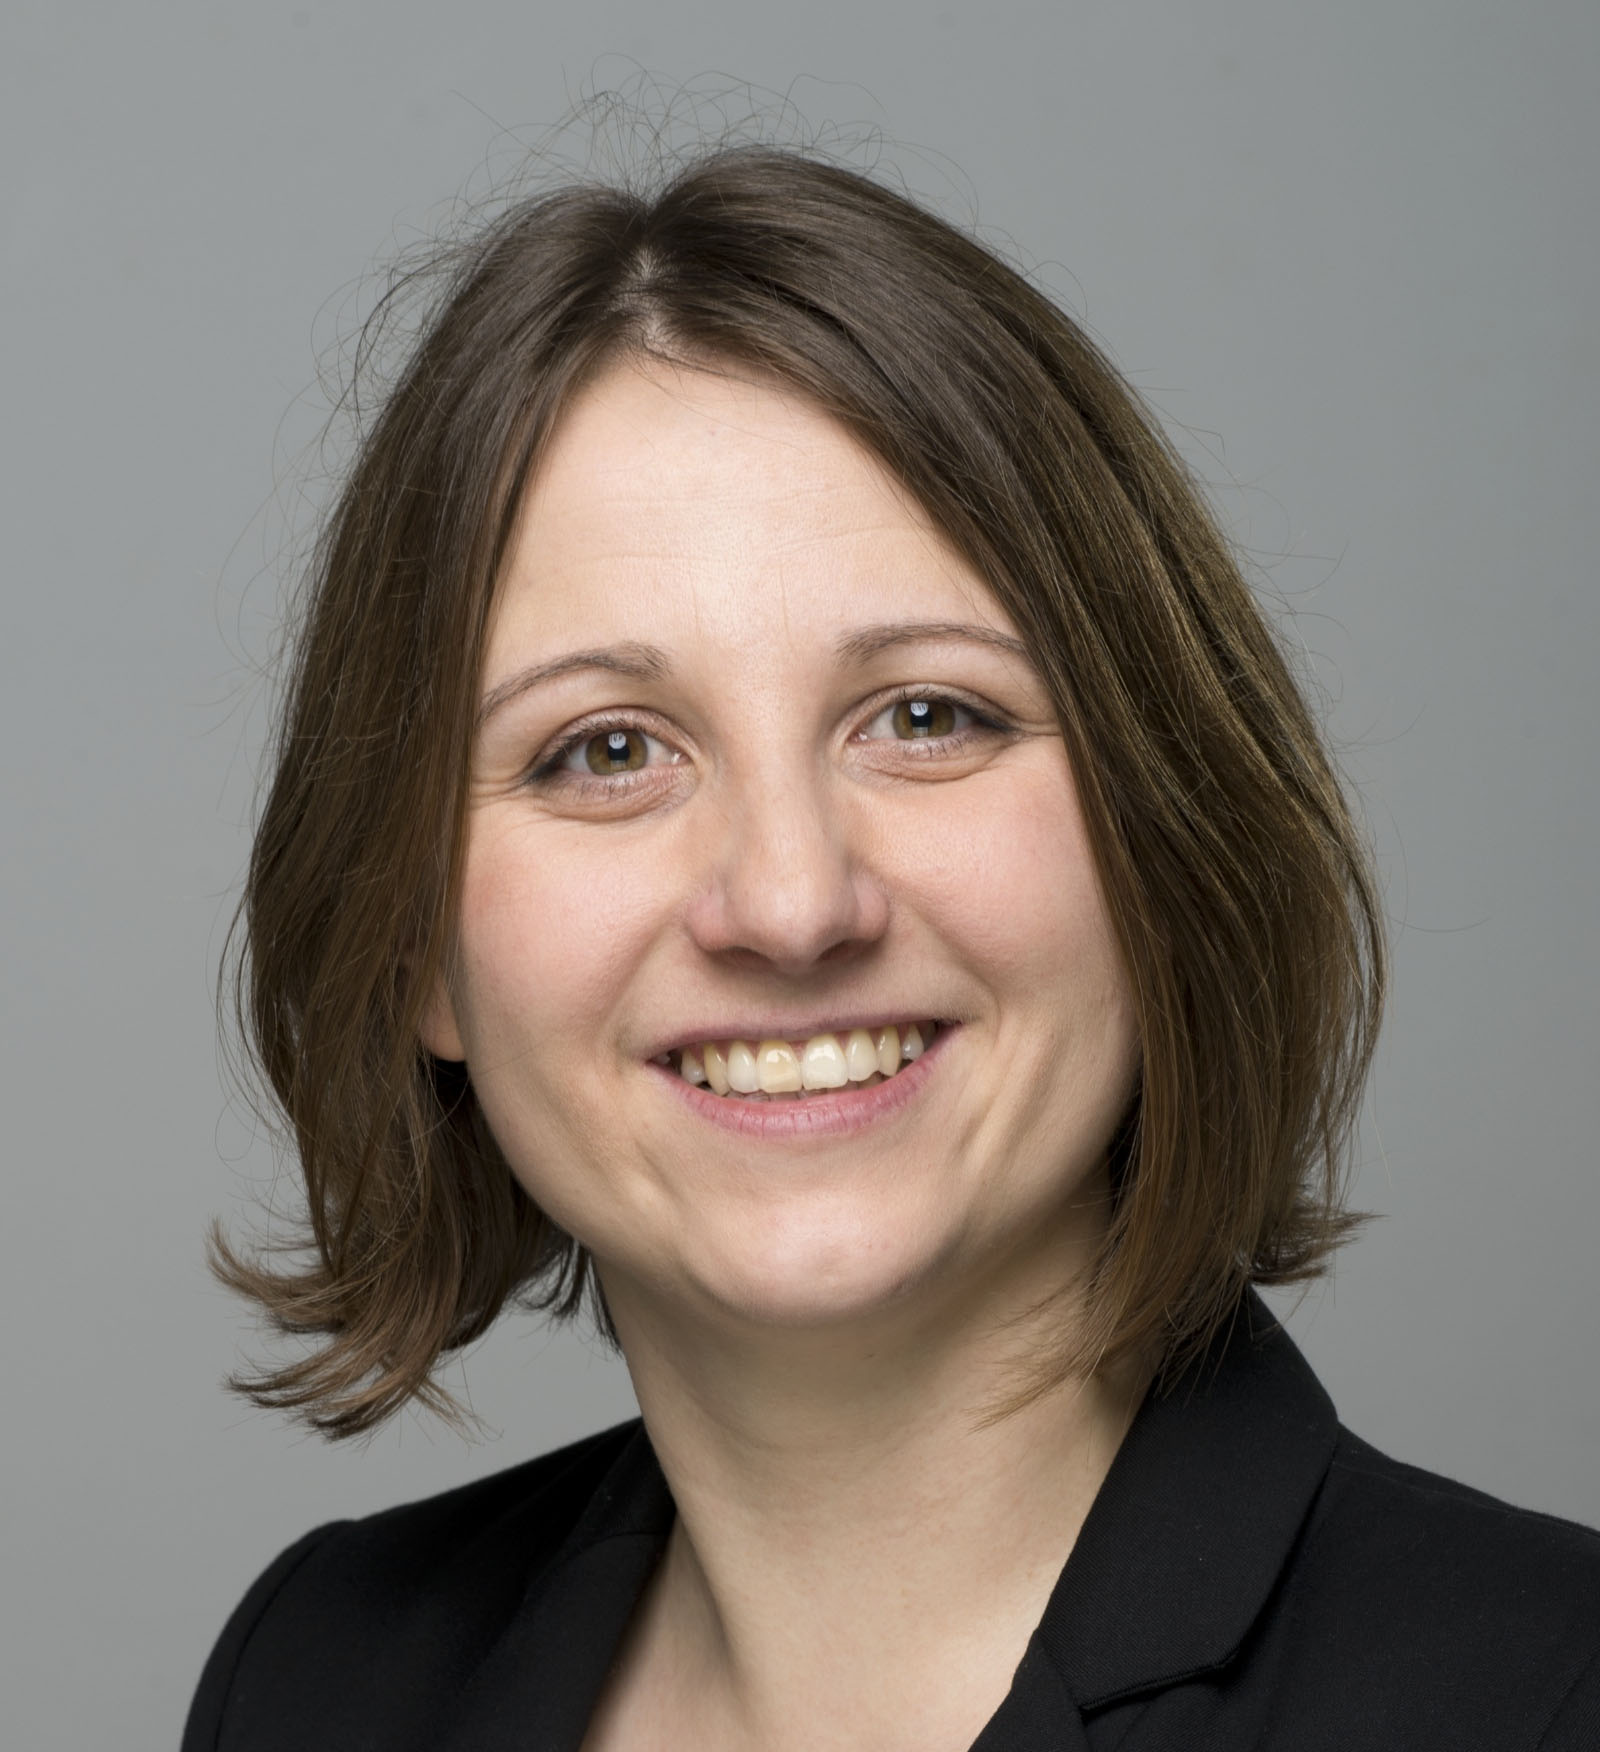 Jana Witt, Chair of Healthwatch Islington